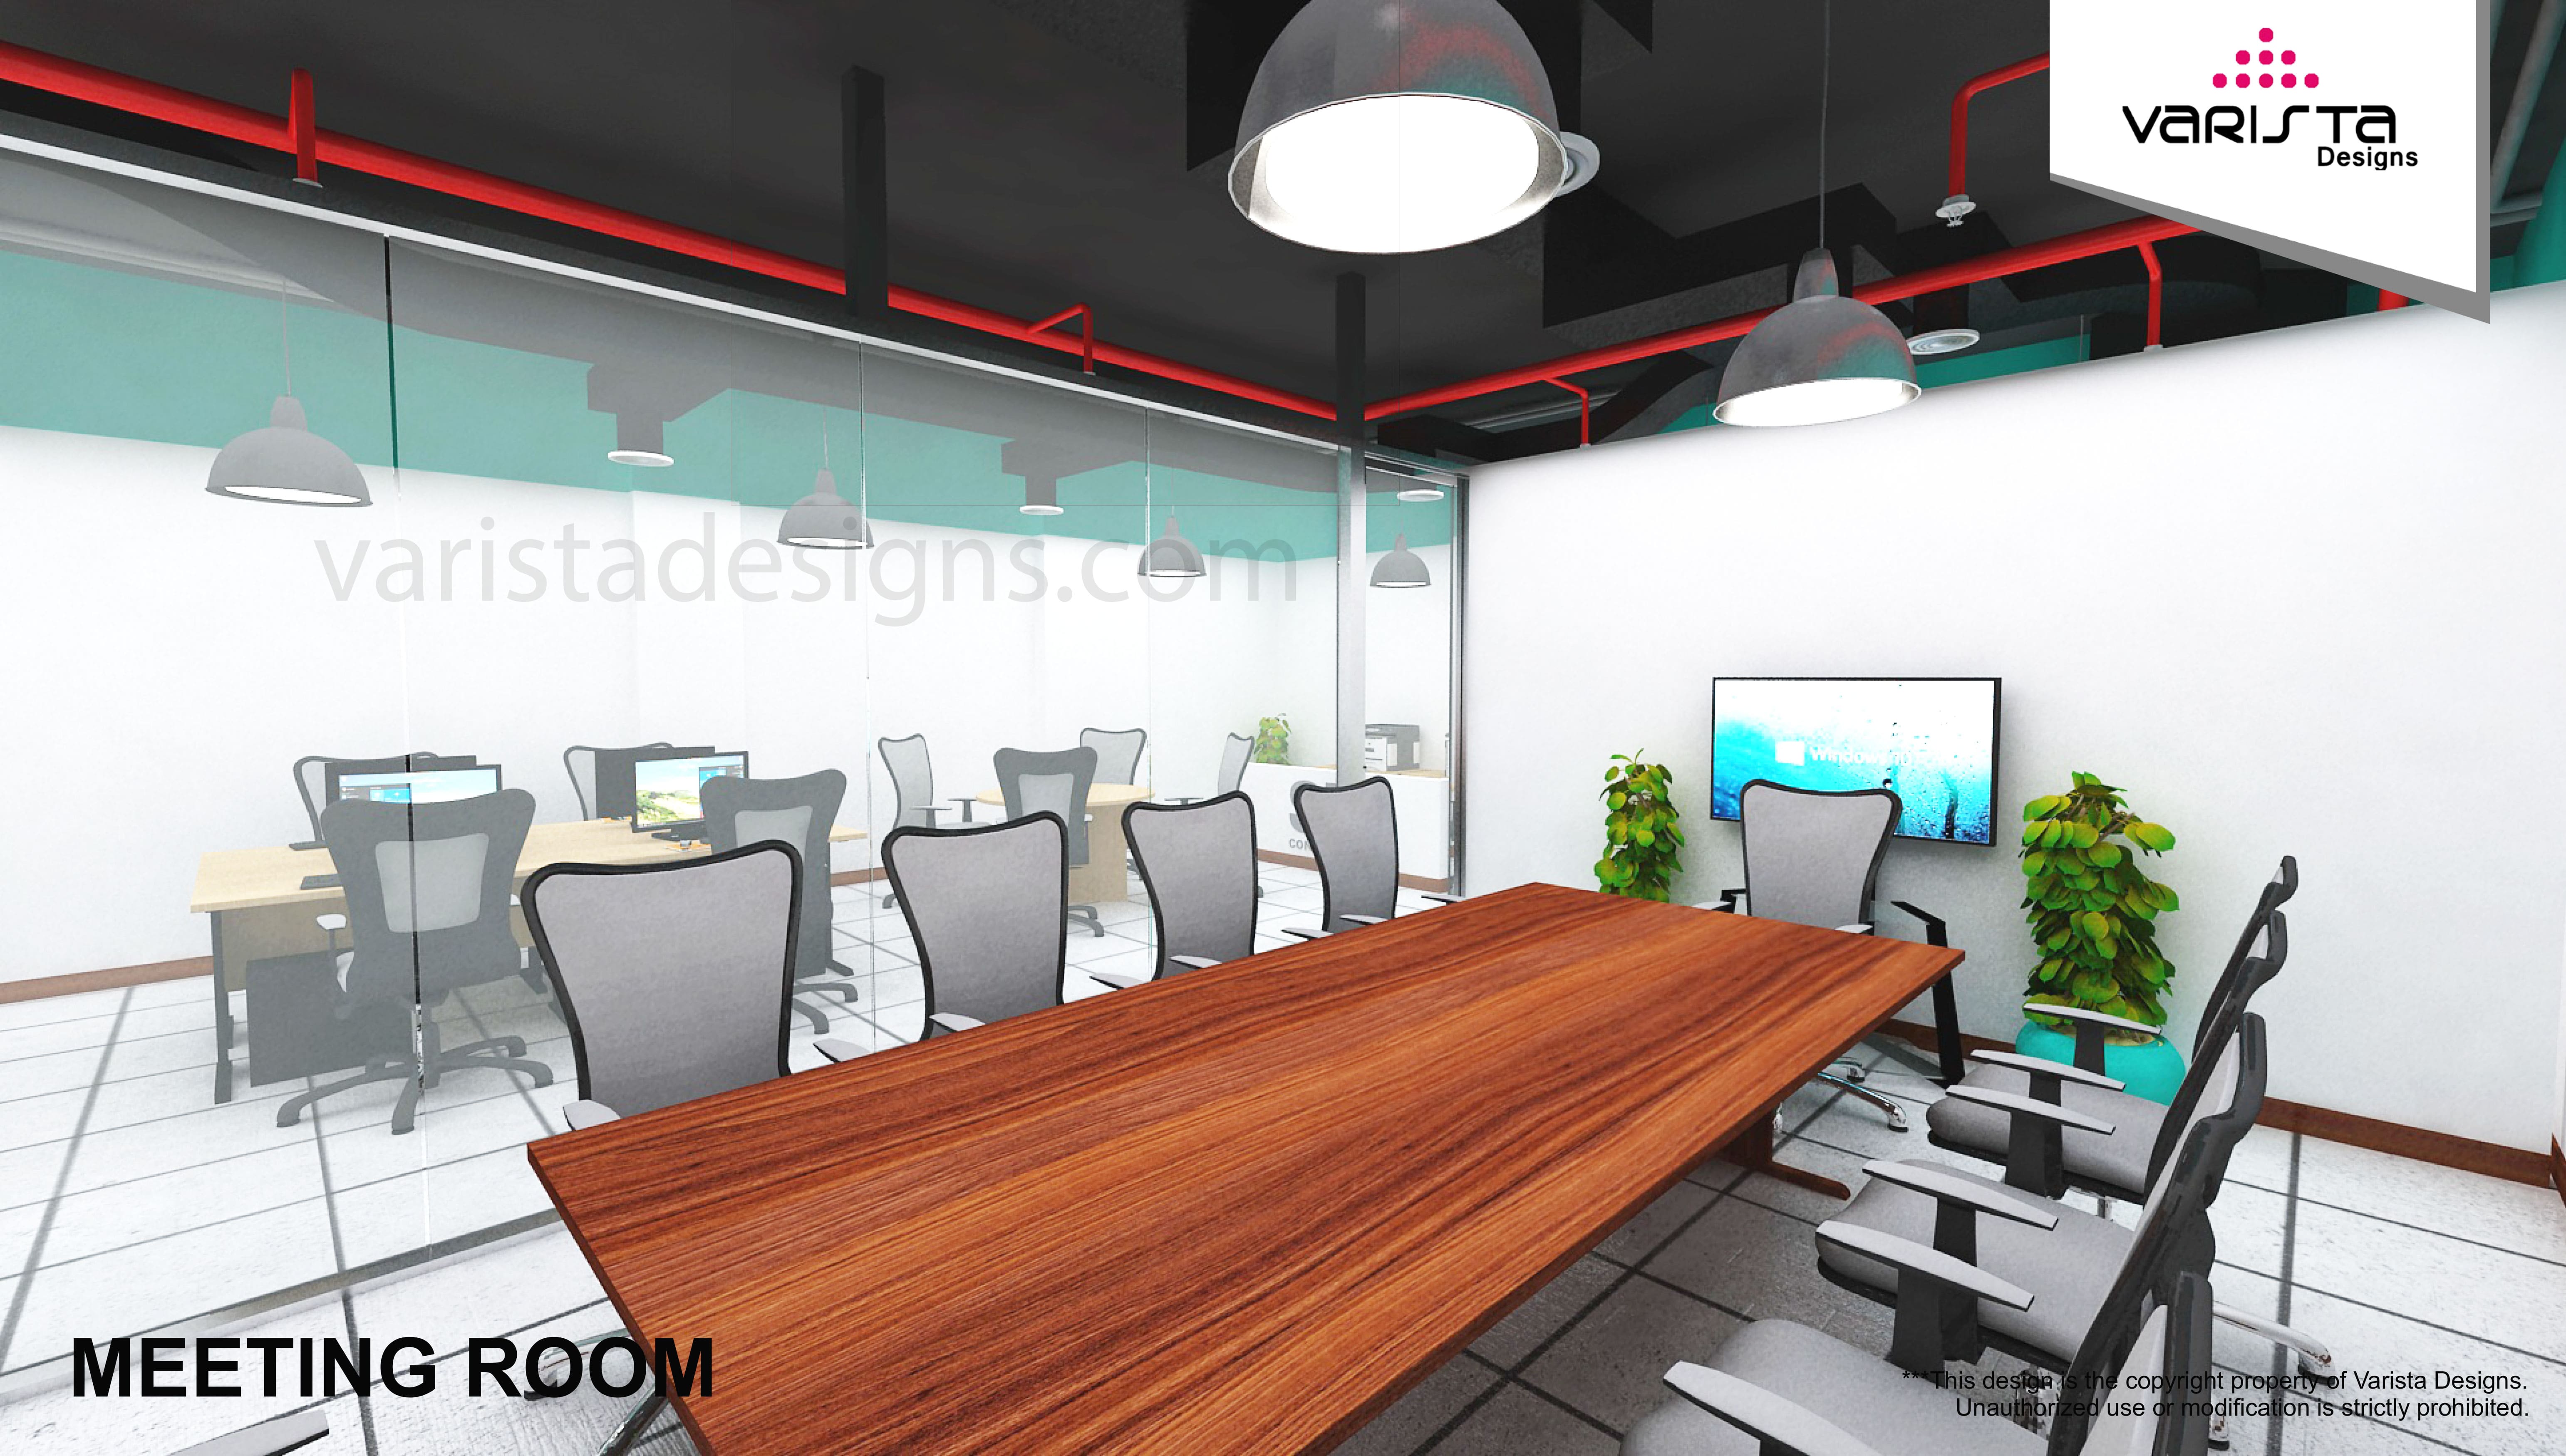 SK CONTRACTING office interior design fitout in dubai